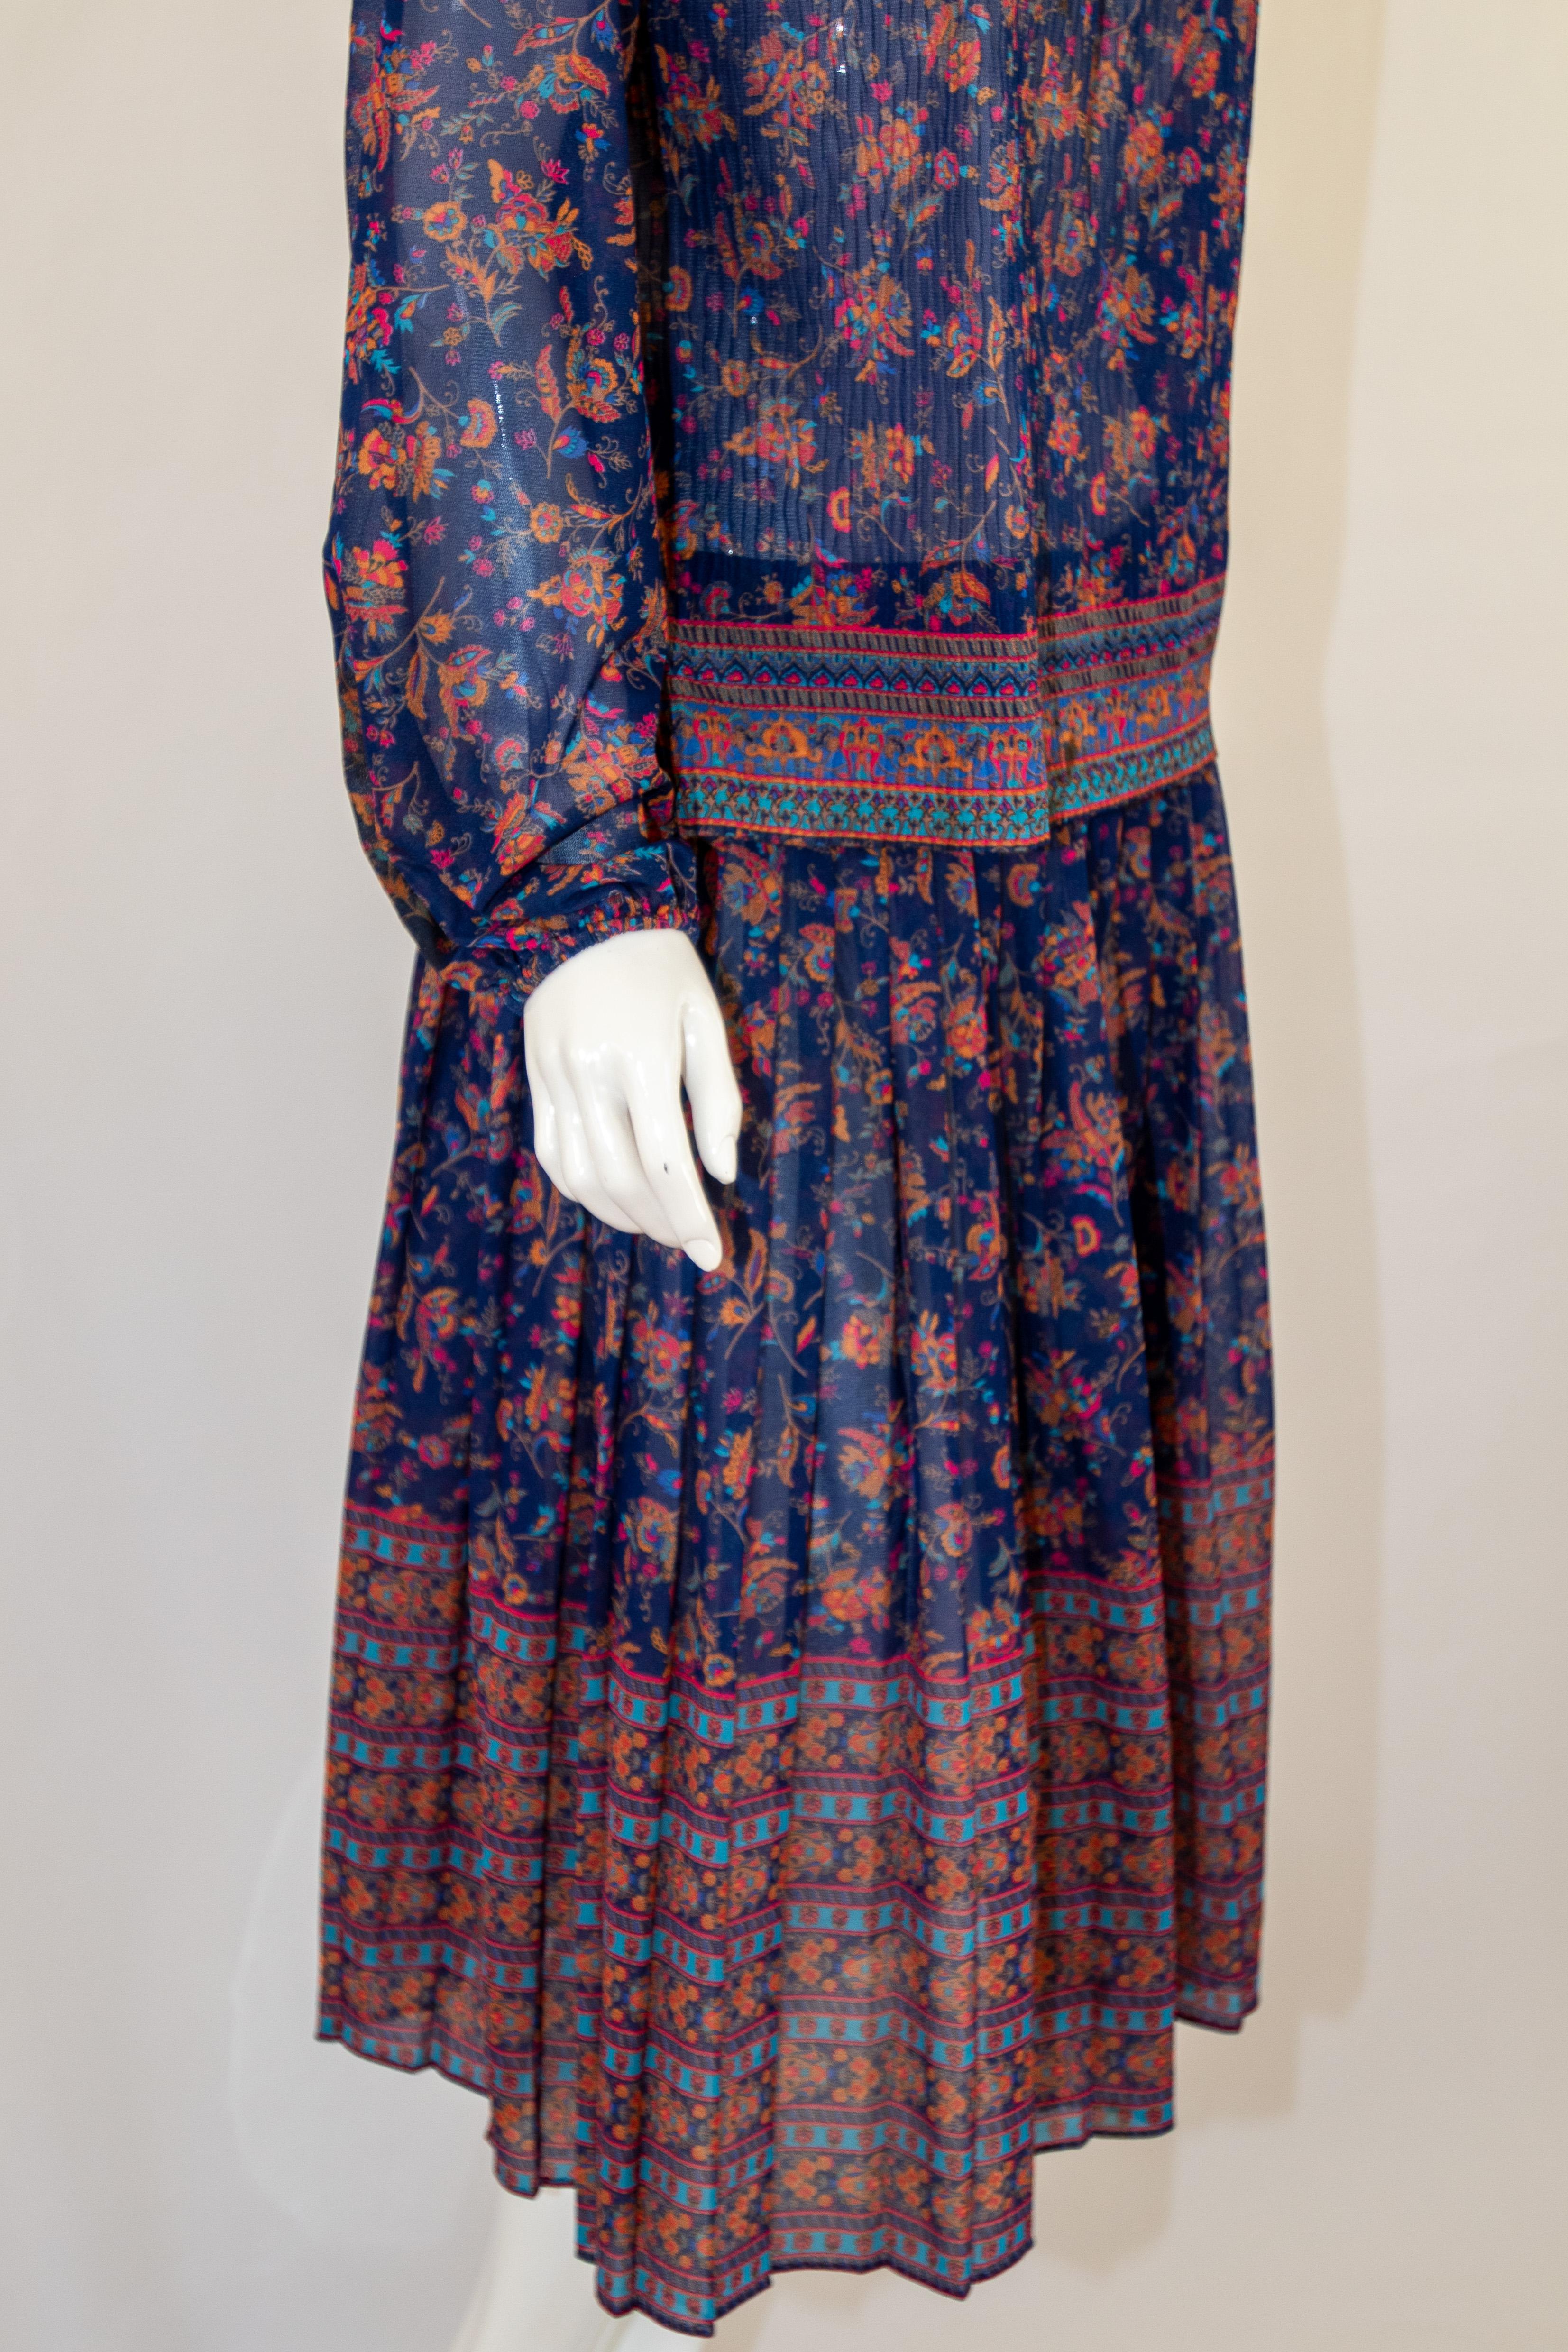 Black 1970s Vintage Bohemian Floral Printed Dress Miss Magnin at I. Magnin For Sale